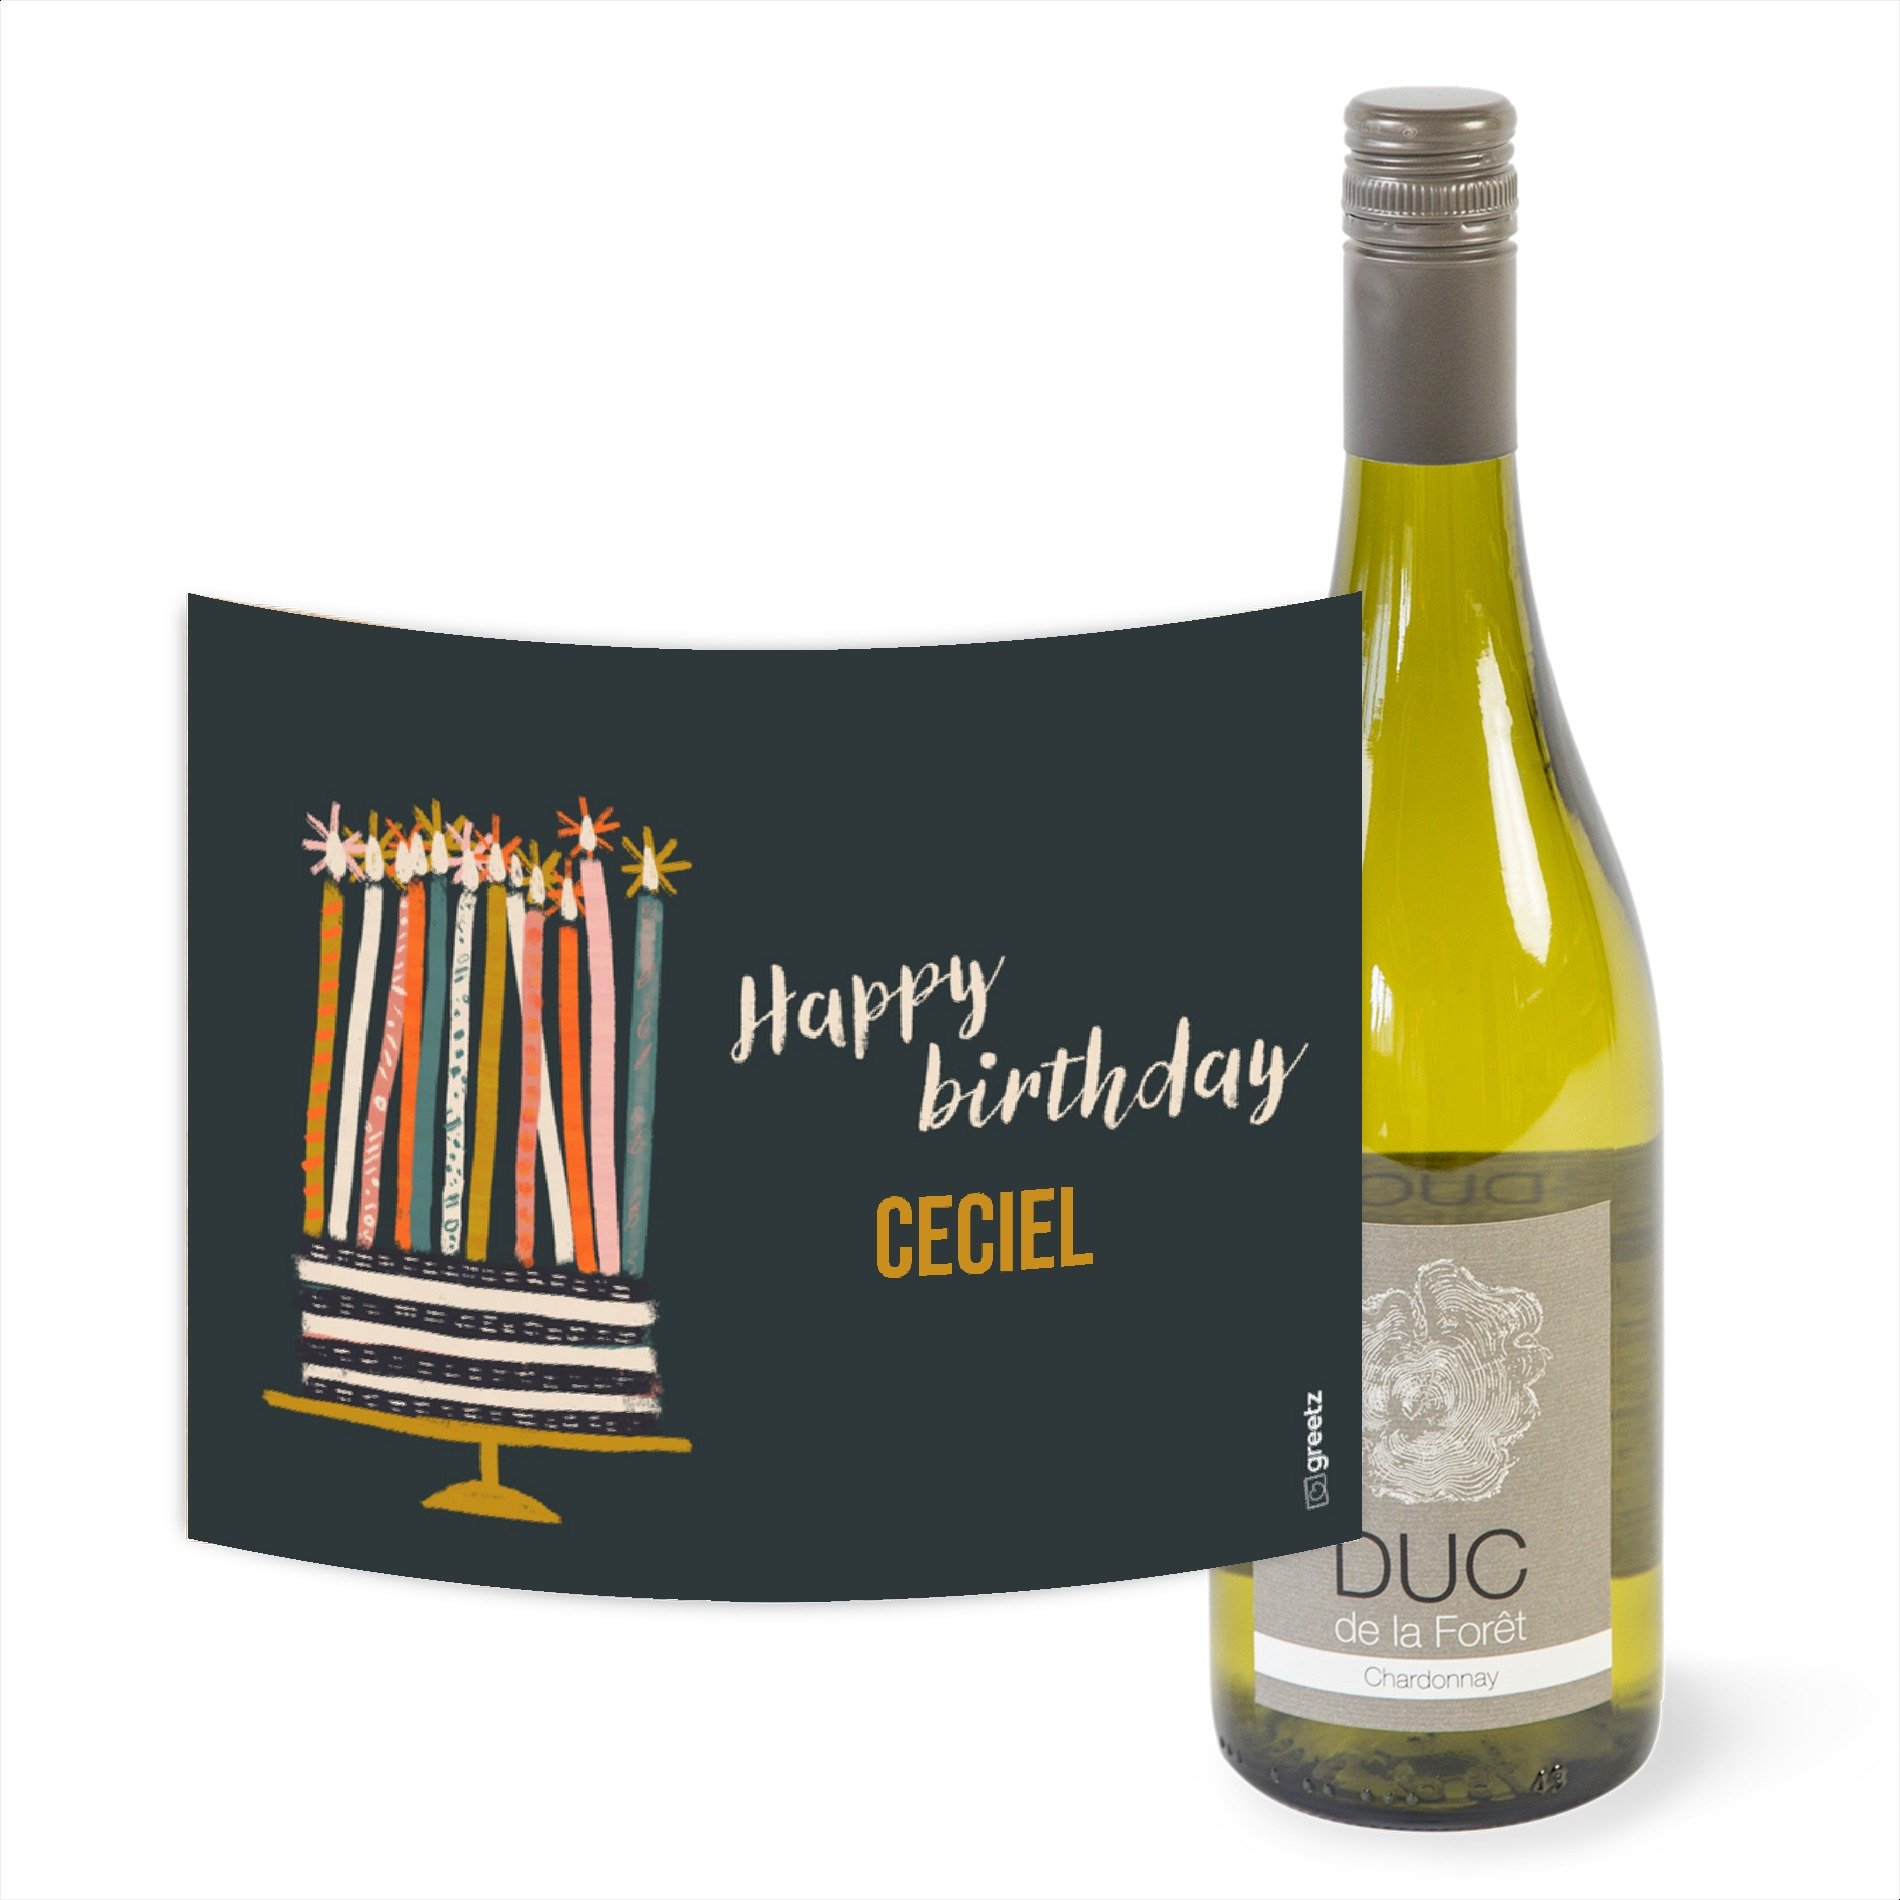 Duc de la Foret - Chardonnay - Happy Birthday met eigen naam - 750 ml